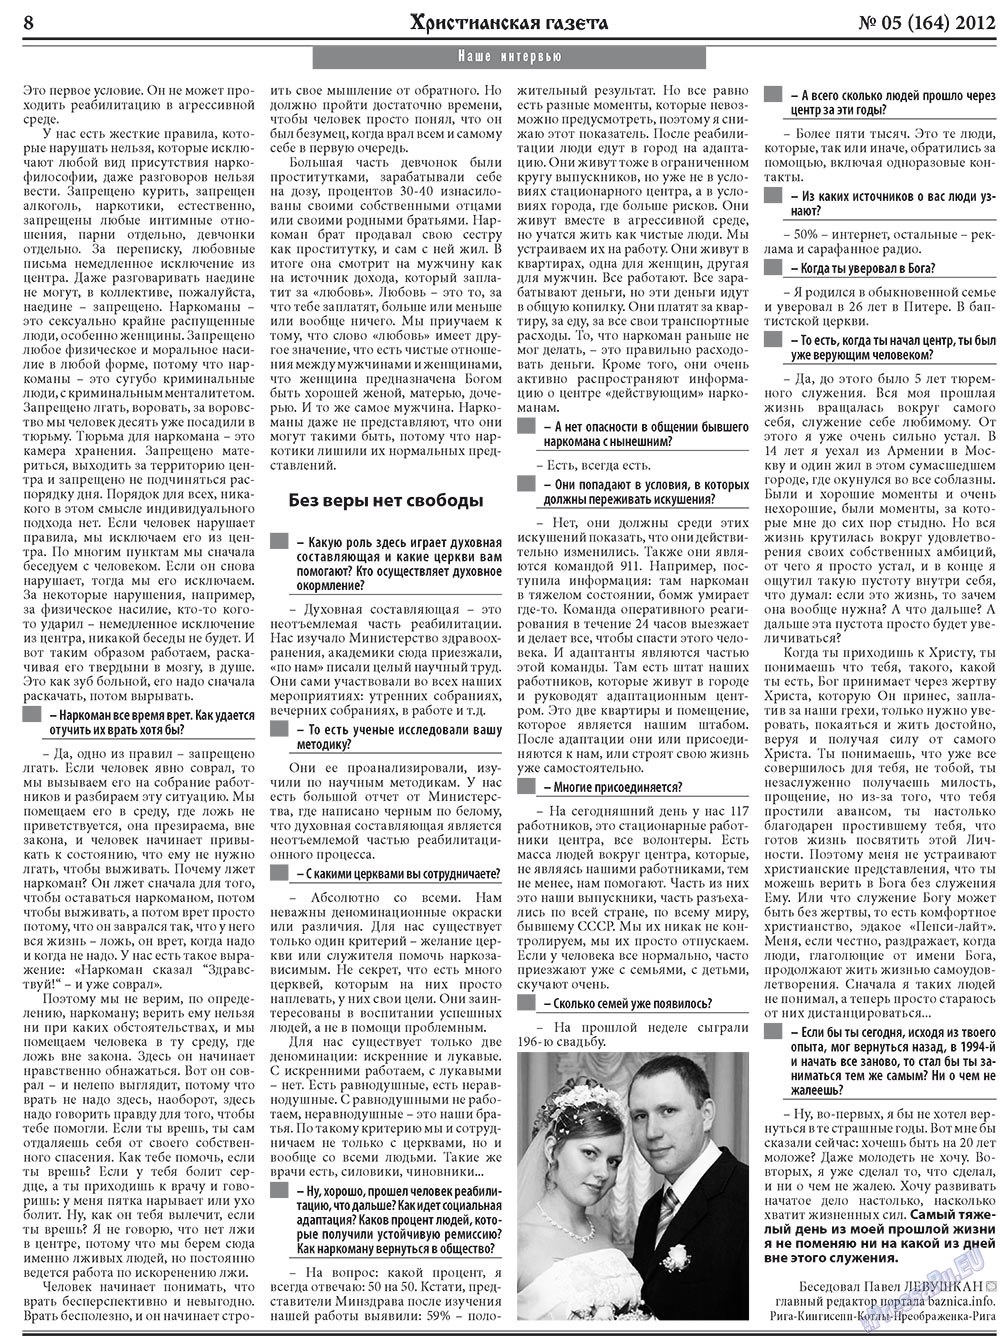 Христианская газета, газета. 2012 №5 стр.8